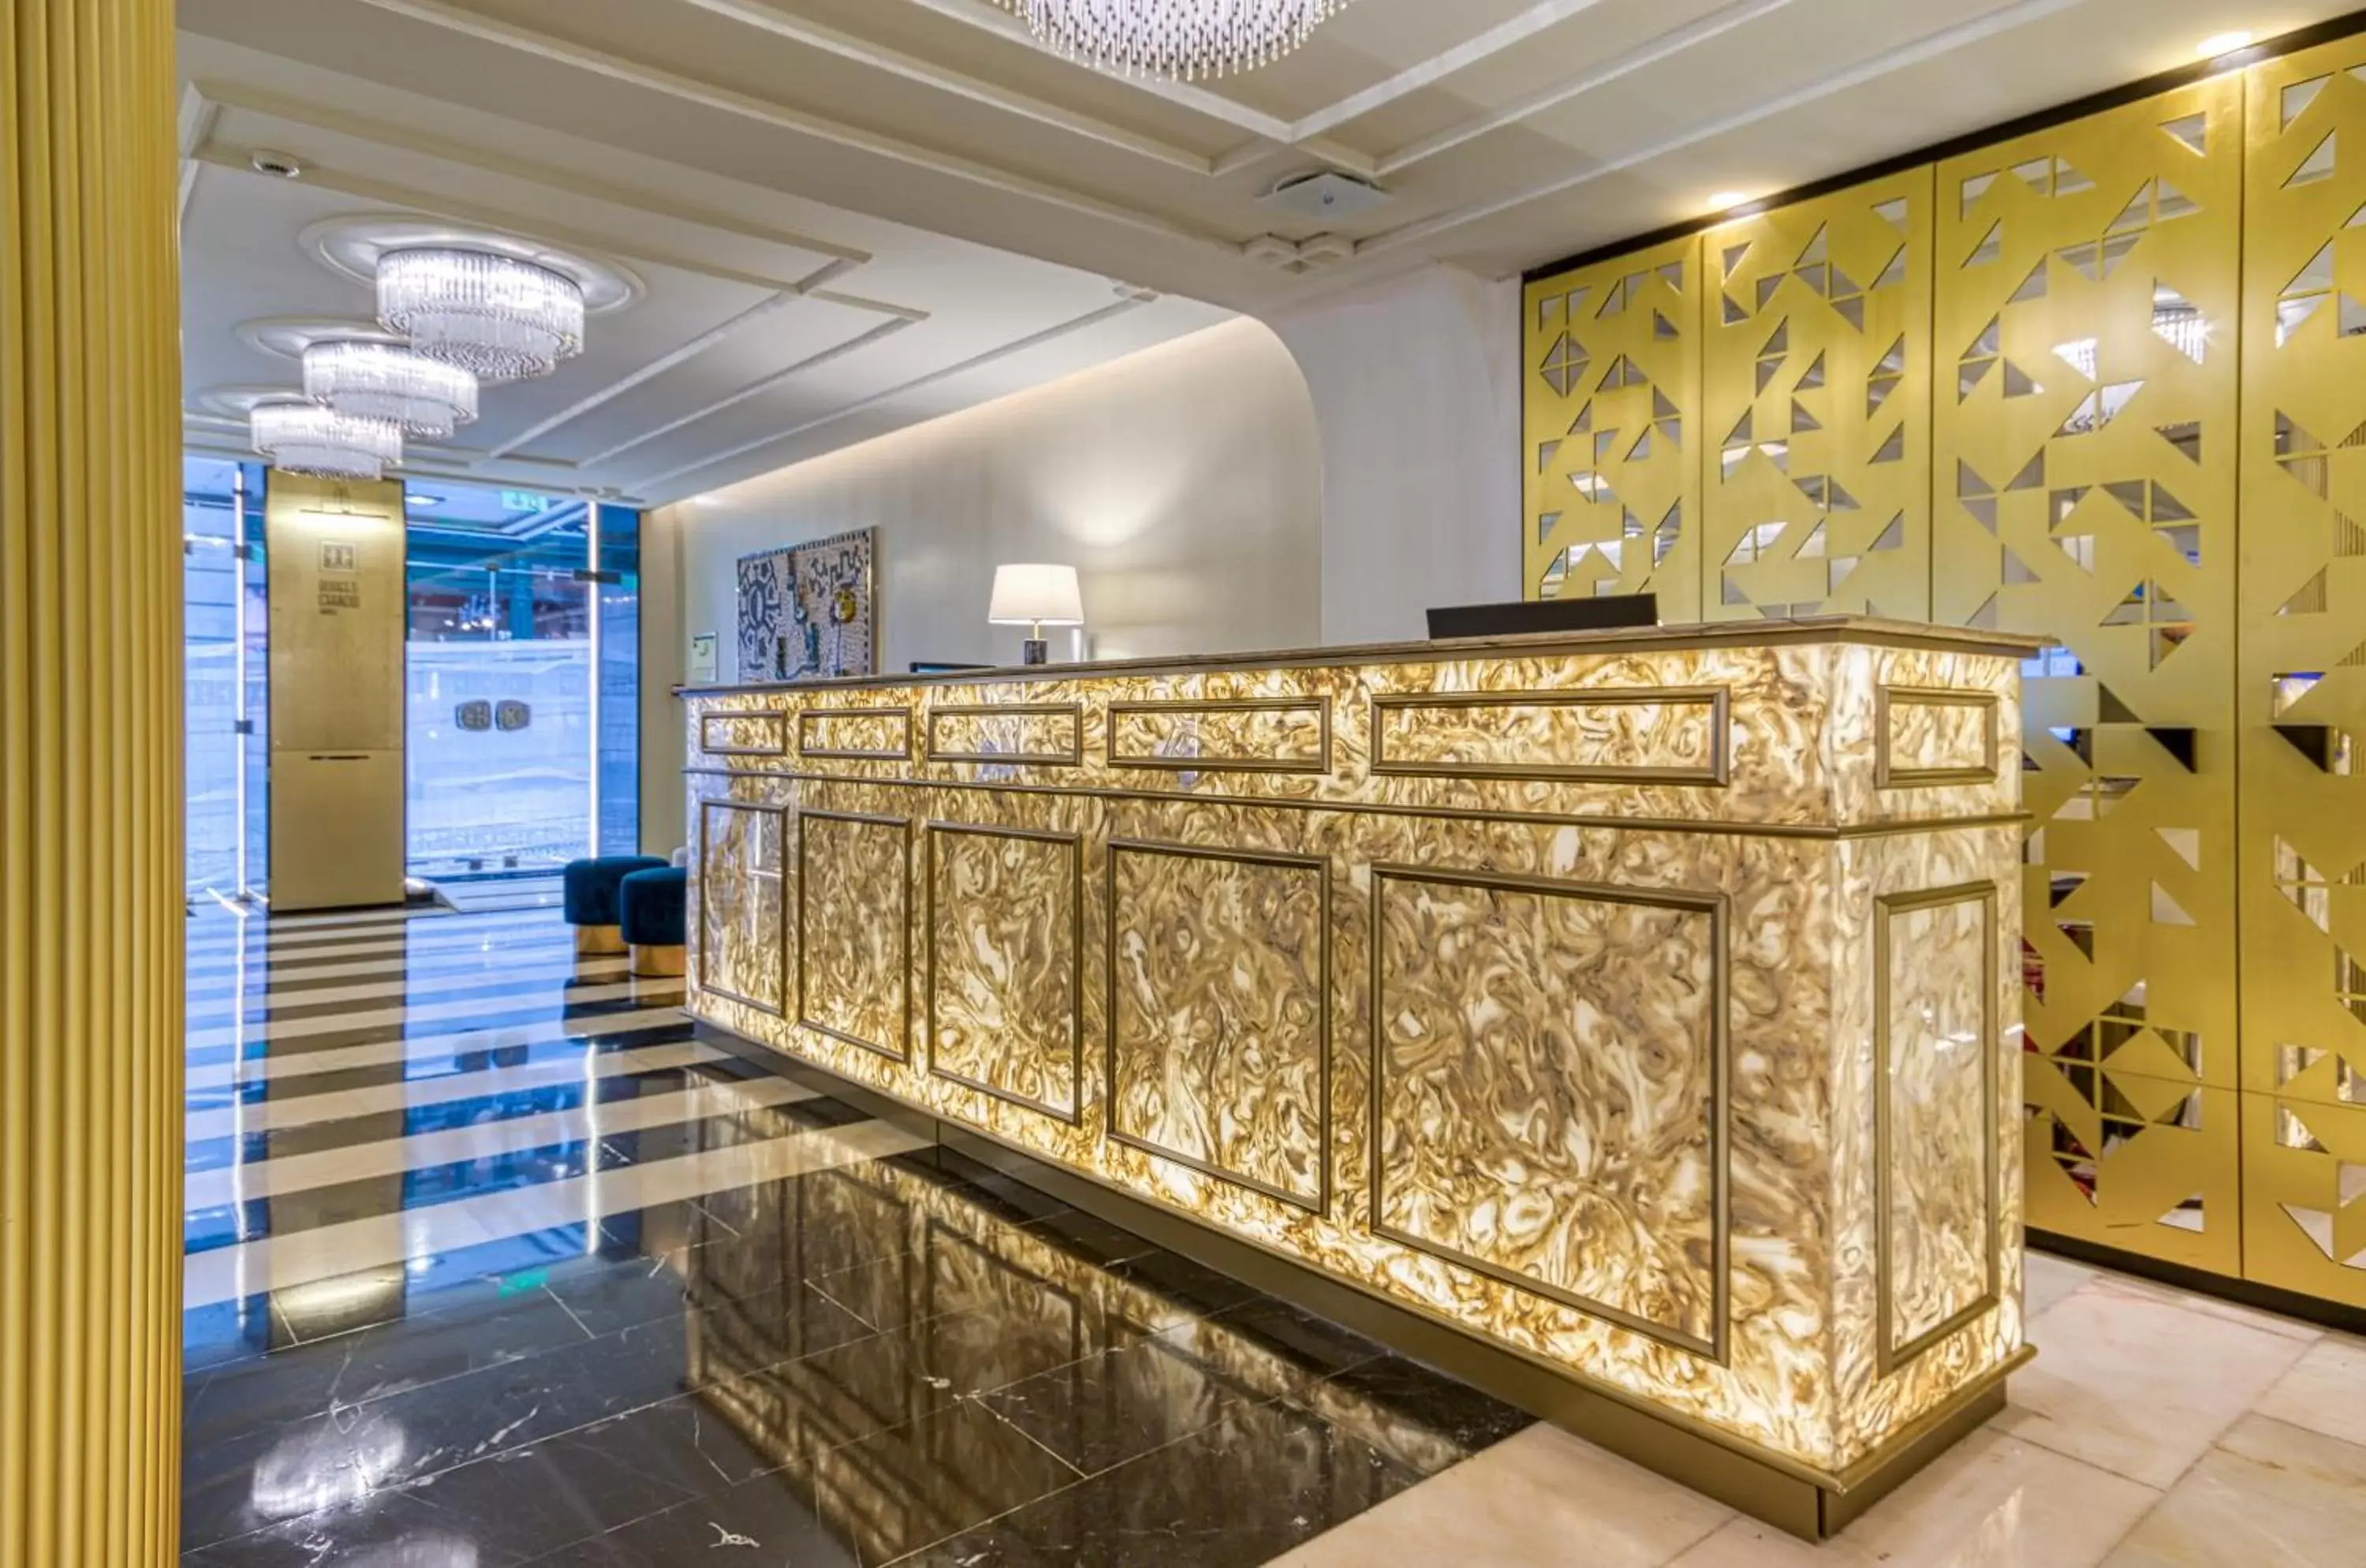 Lobby or reception, Lobby/Reception in Hotel Borges Chiado